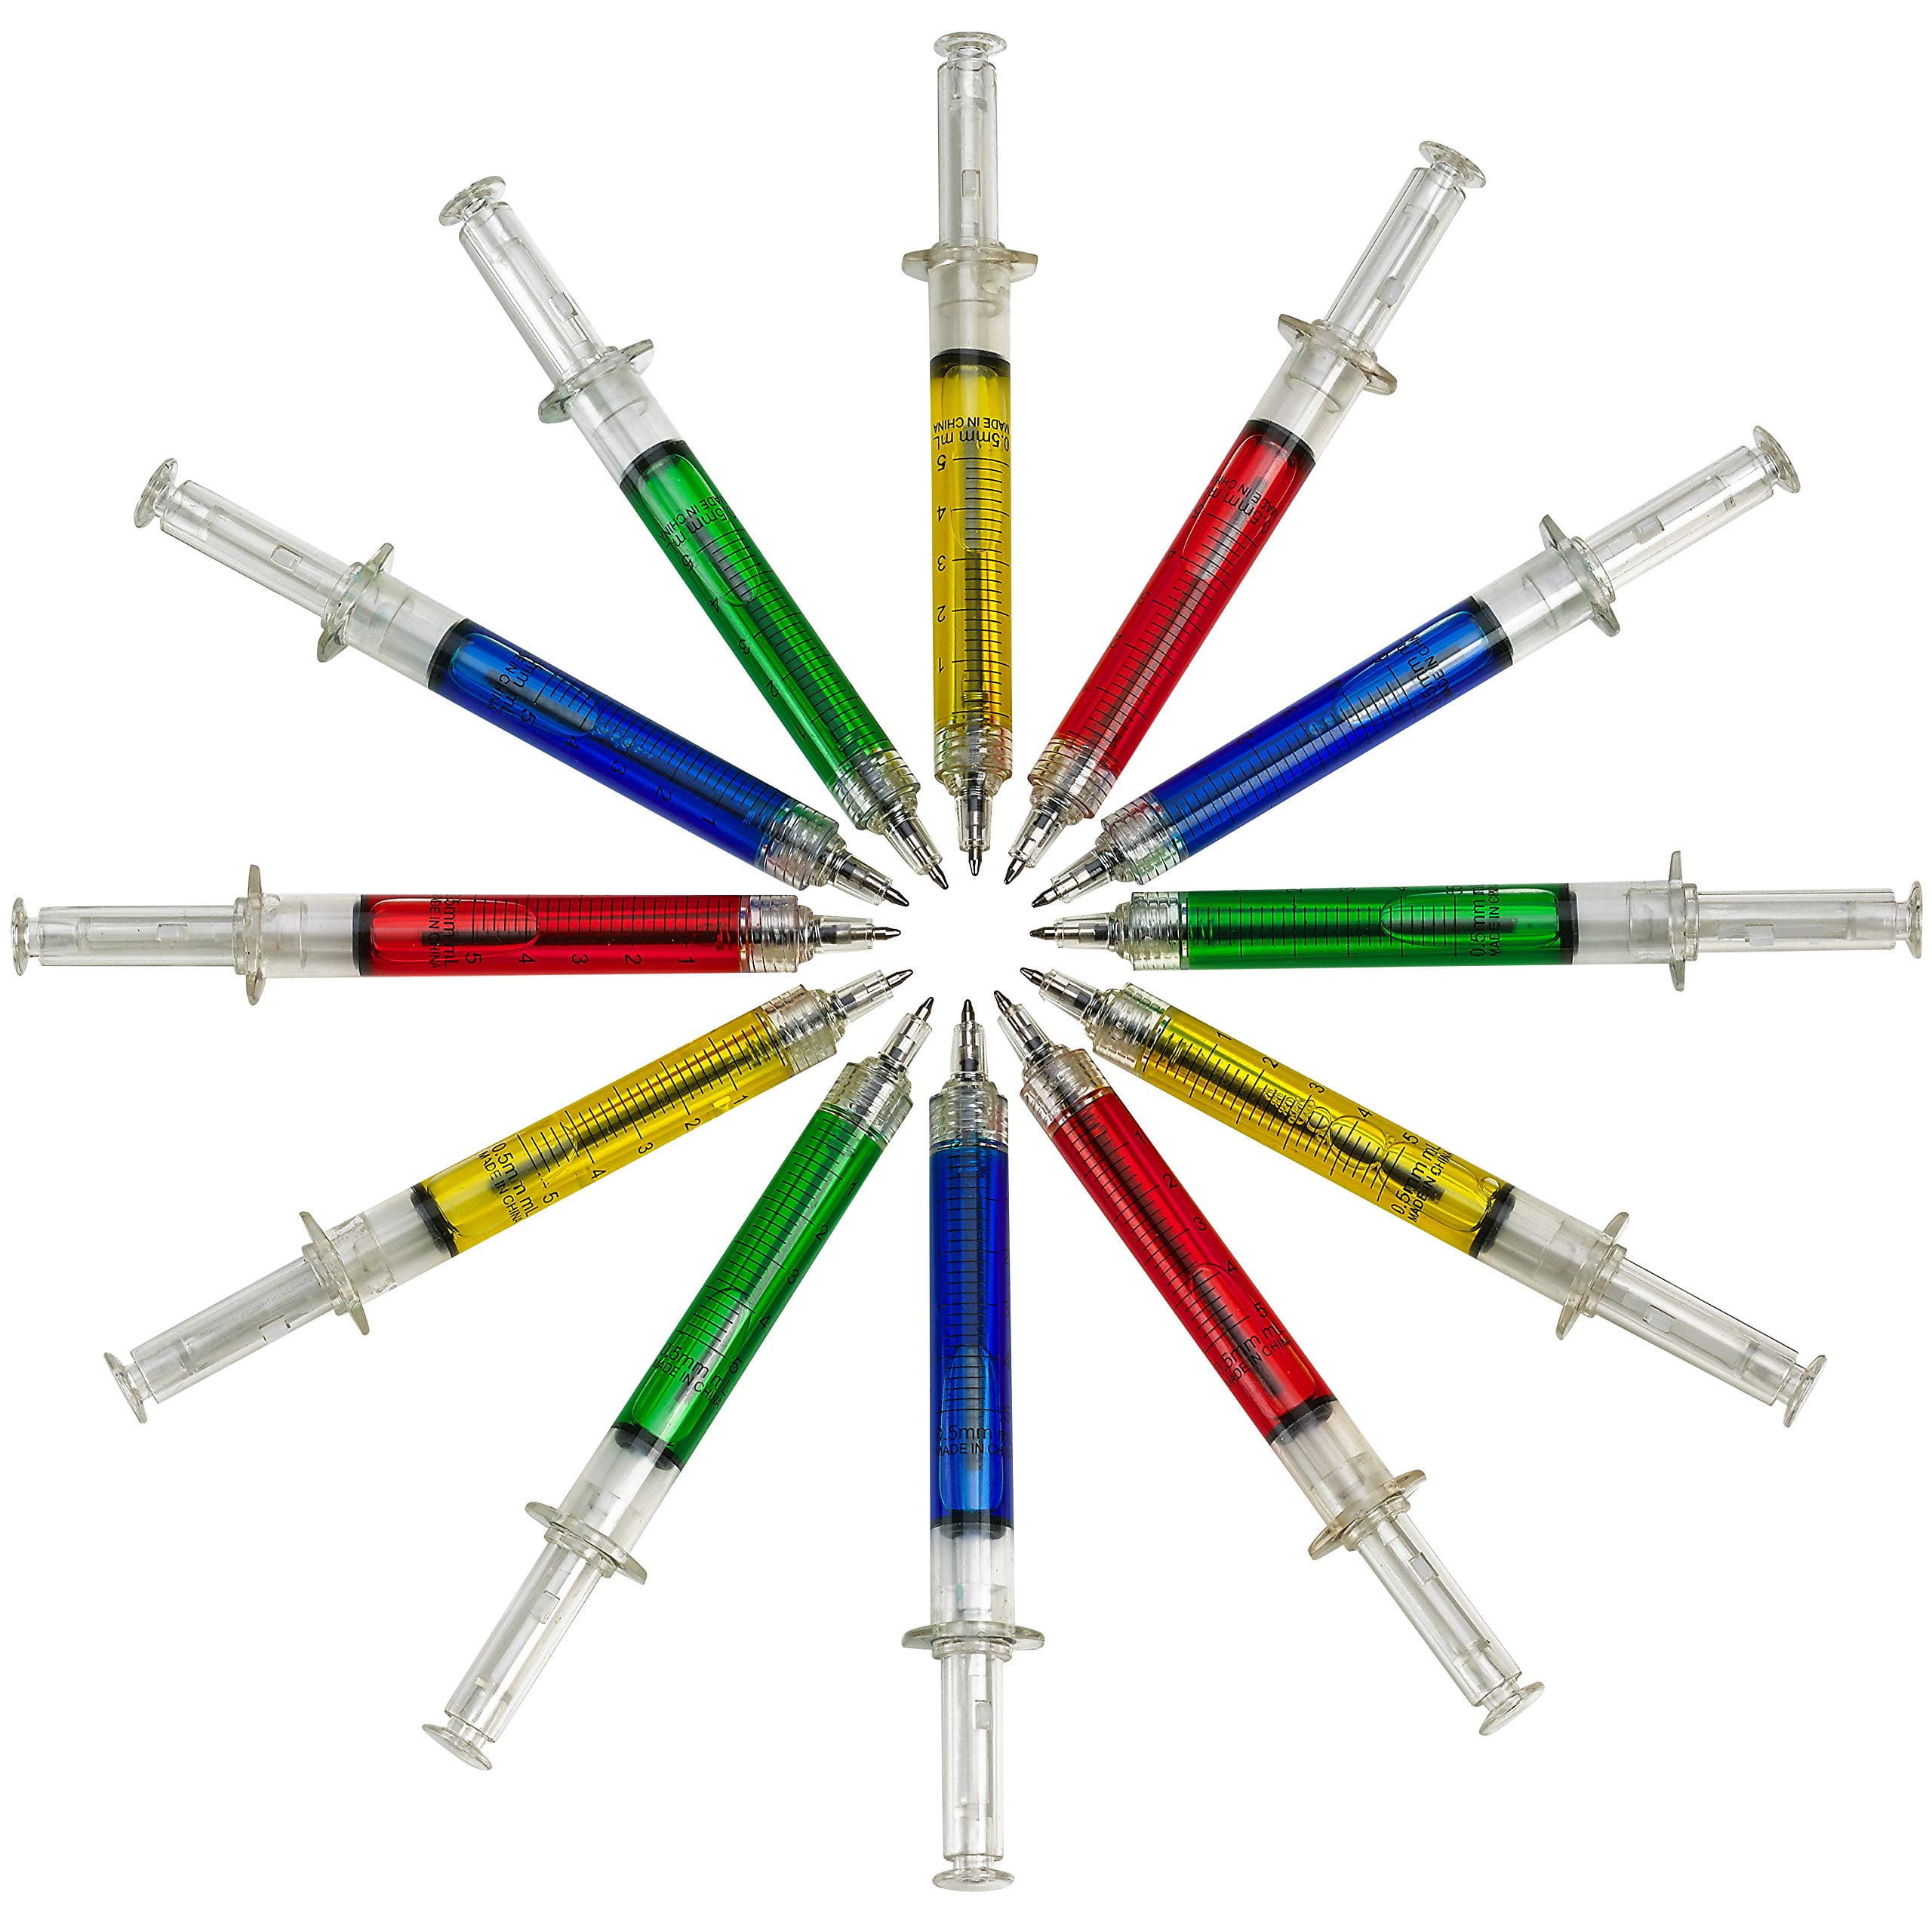 5PCS/LOT PLASTIC SYRINGE Pens Gifts For Teachers Funny Nurse Pen School  Supp ZD $5.25 - PicClick AU